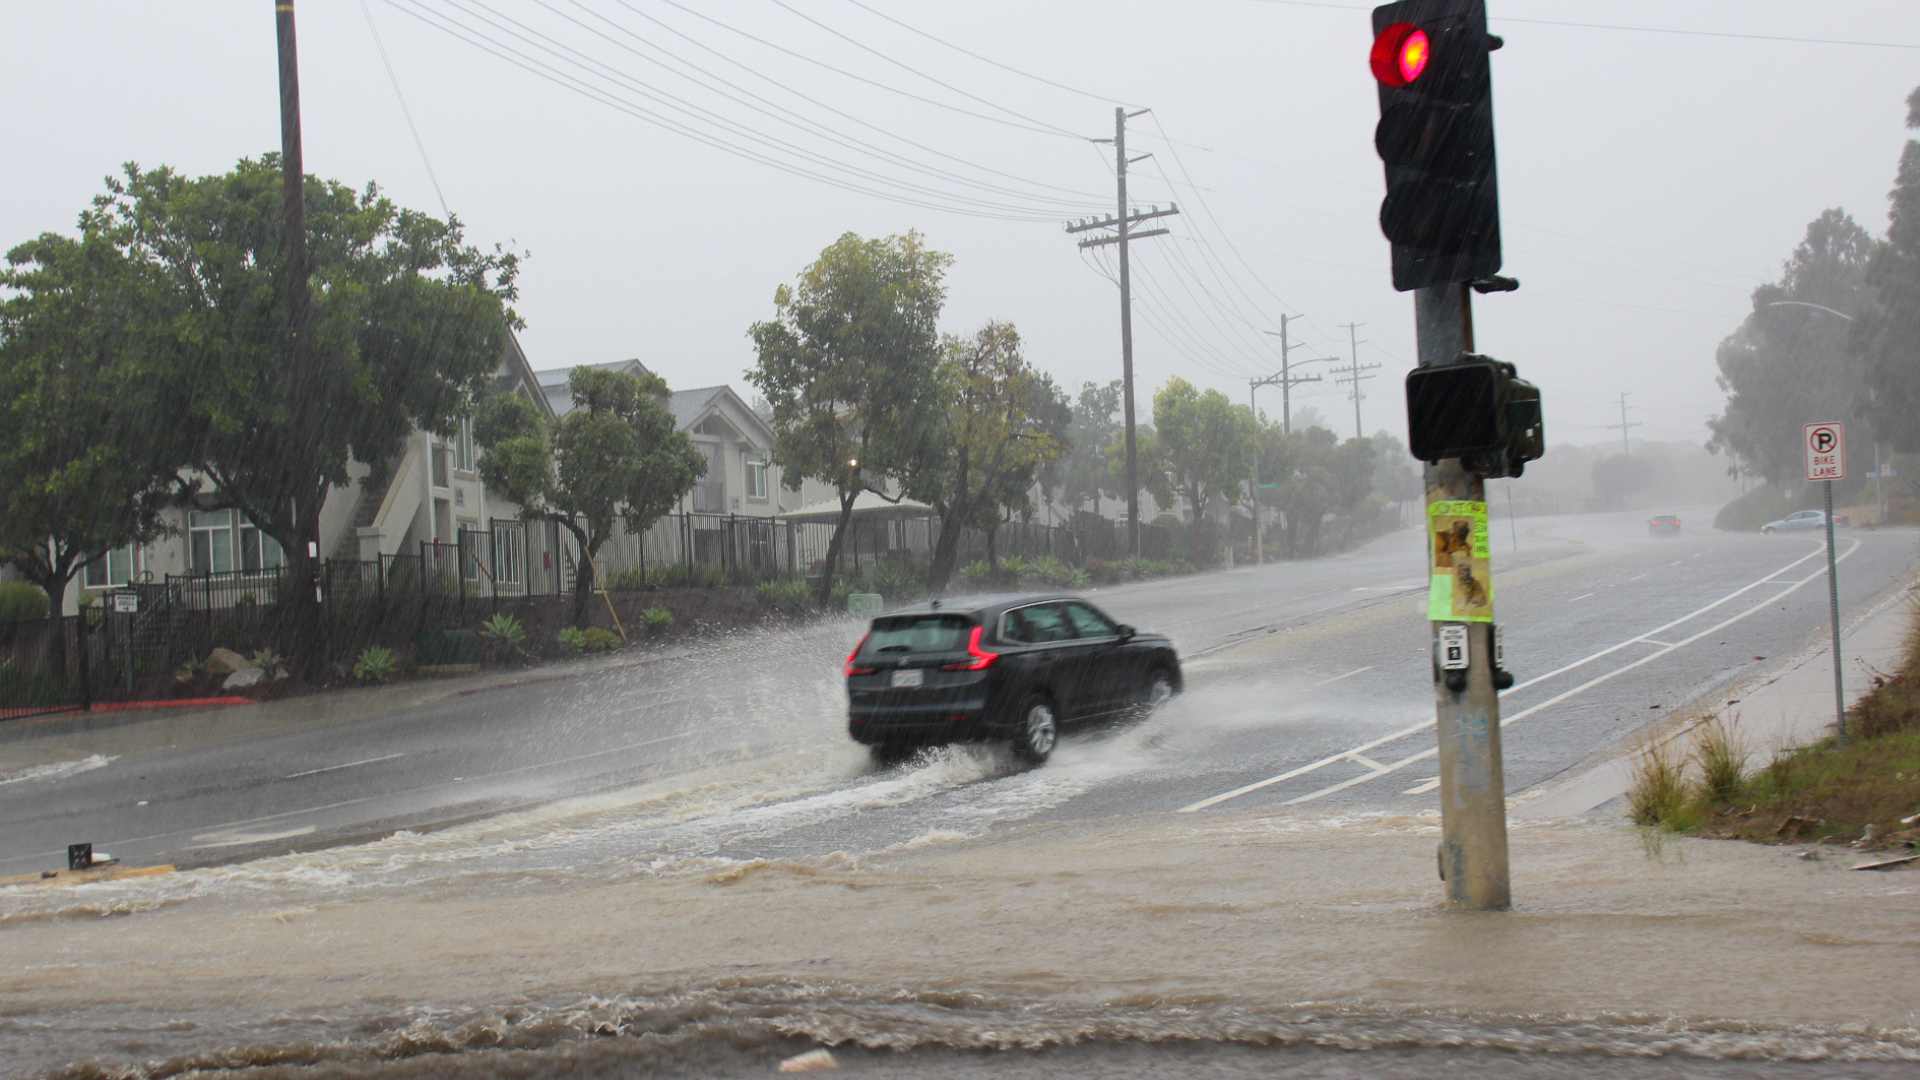 Flood Warning: San Diego, CA